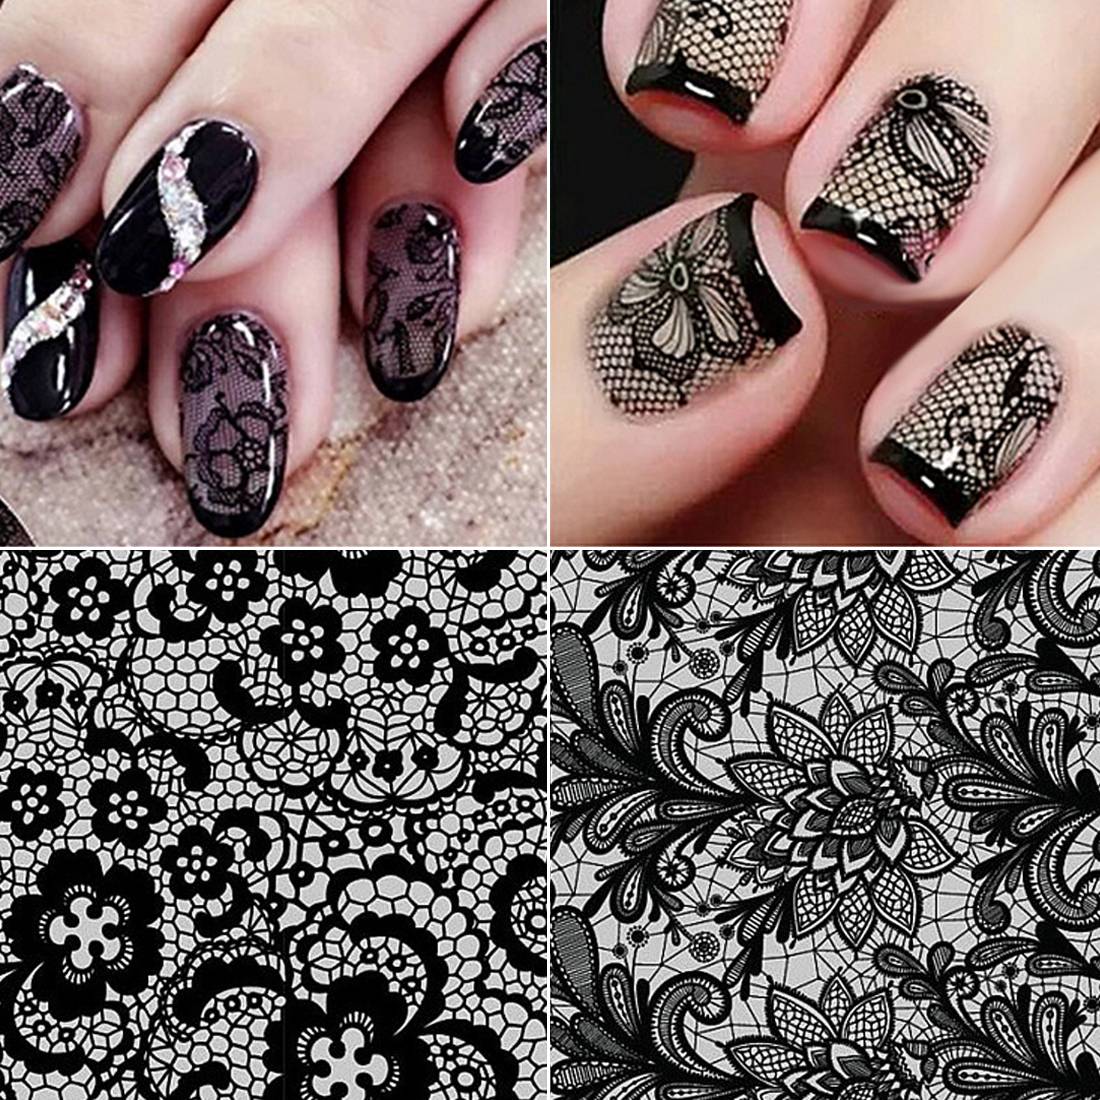 Маникюр кружево: фото ажурного дизайна ногтей